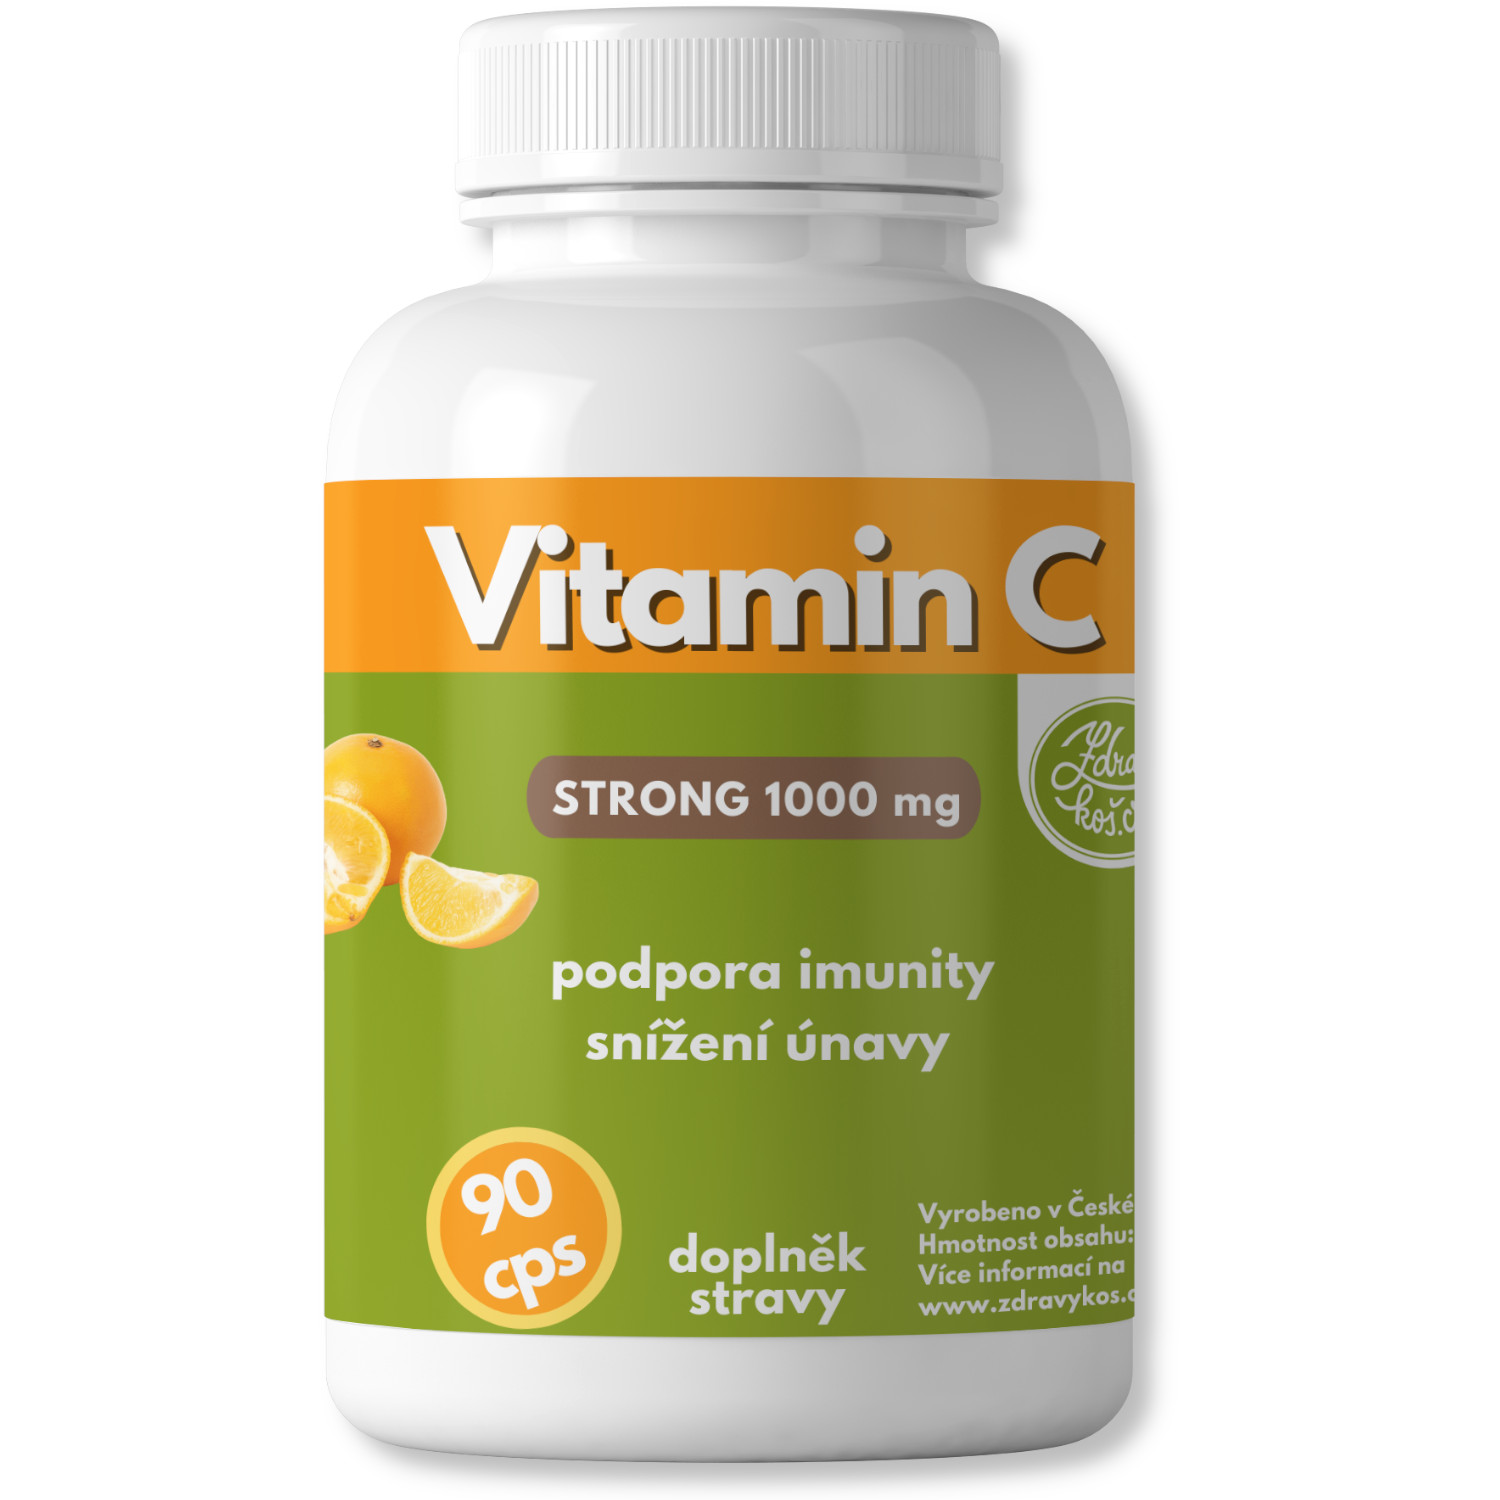 Zdravýkoš Vitamin C STRONG 1000mg 90cps